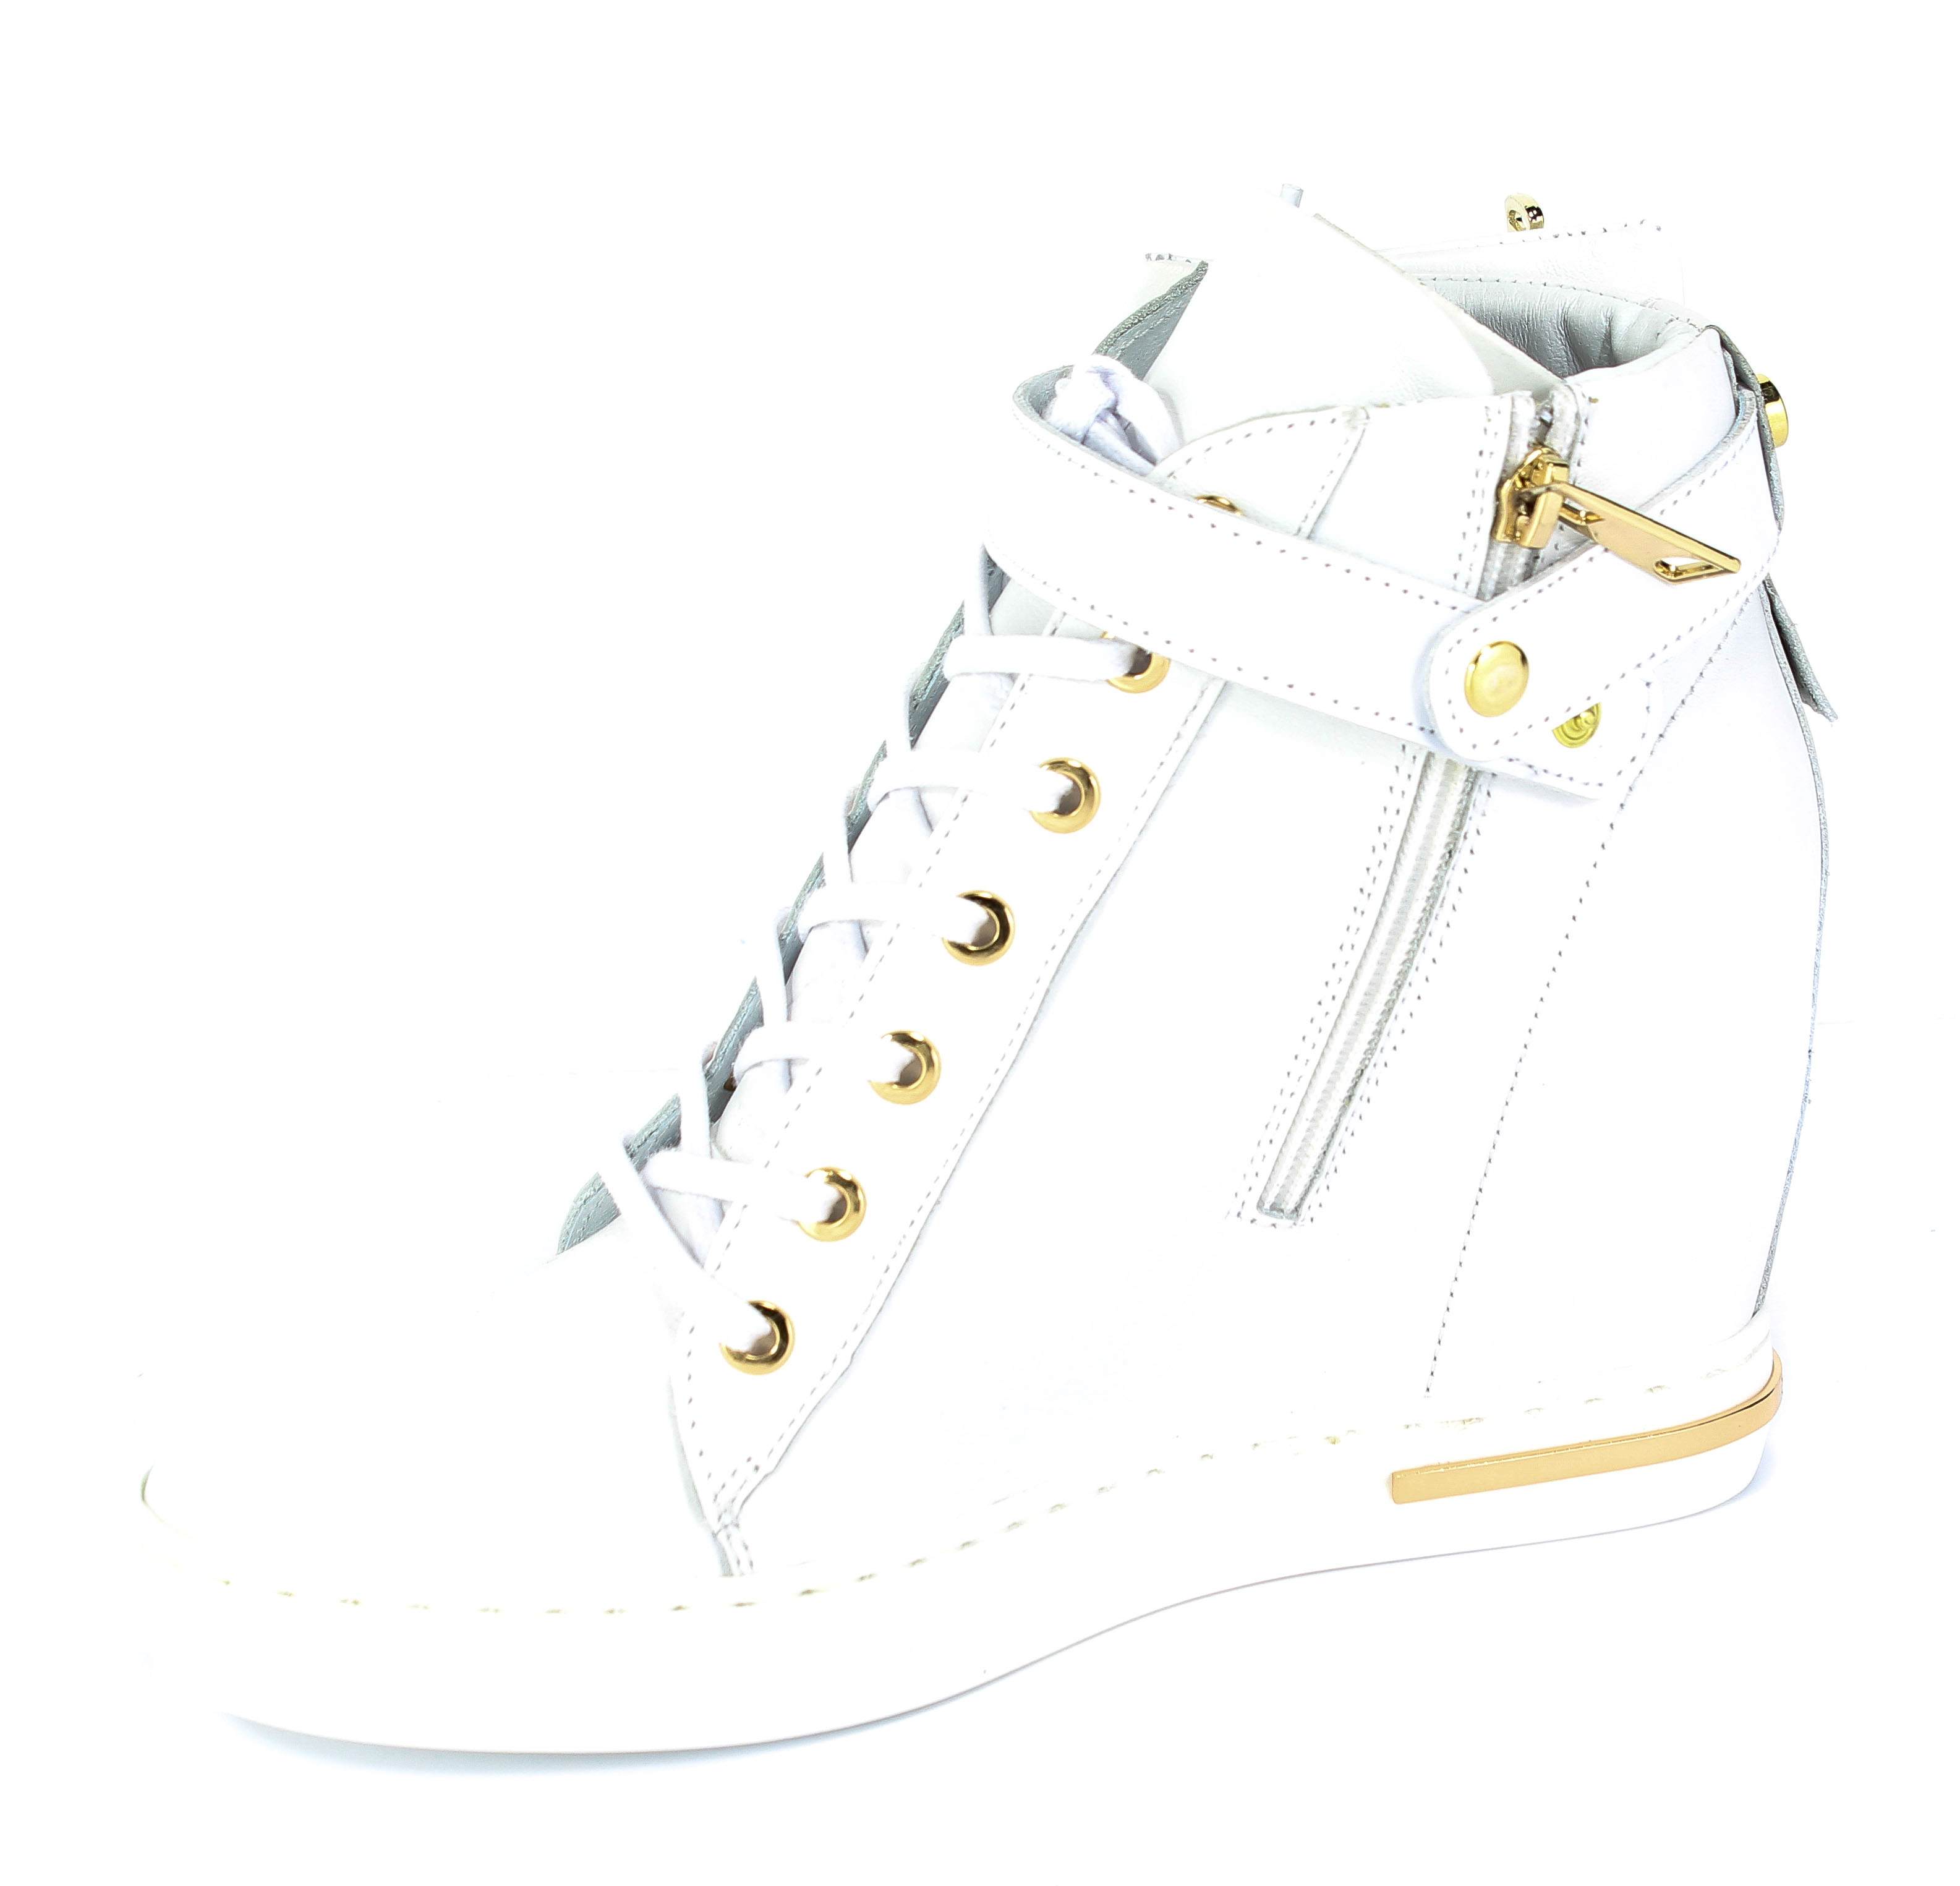 Sneakers Carinii B5612-L46-000-000-B88 Biały